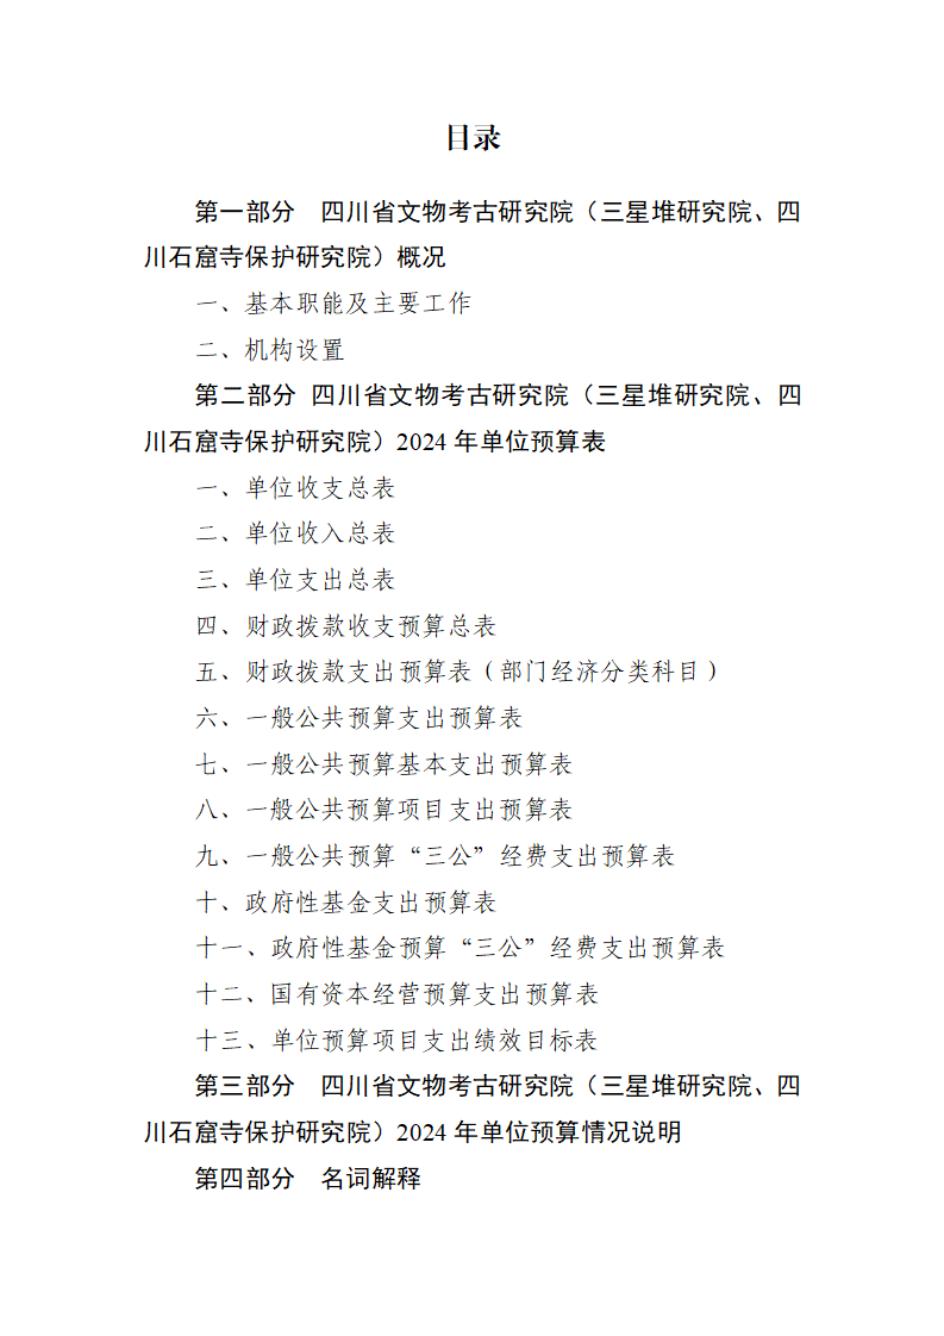 省考古院2024年四川省省级单位预算公开模板(3.14)_01.jpg